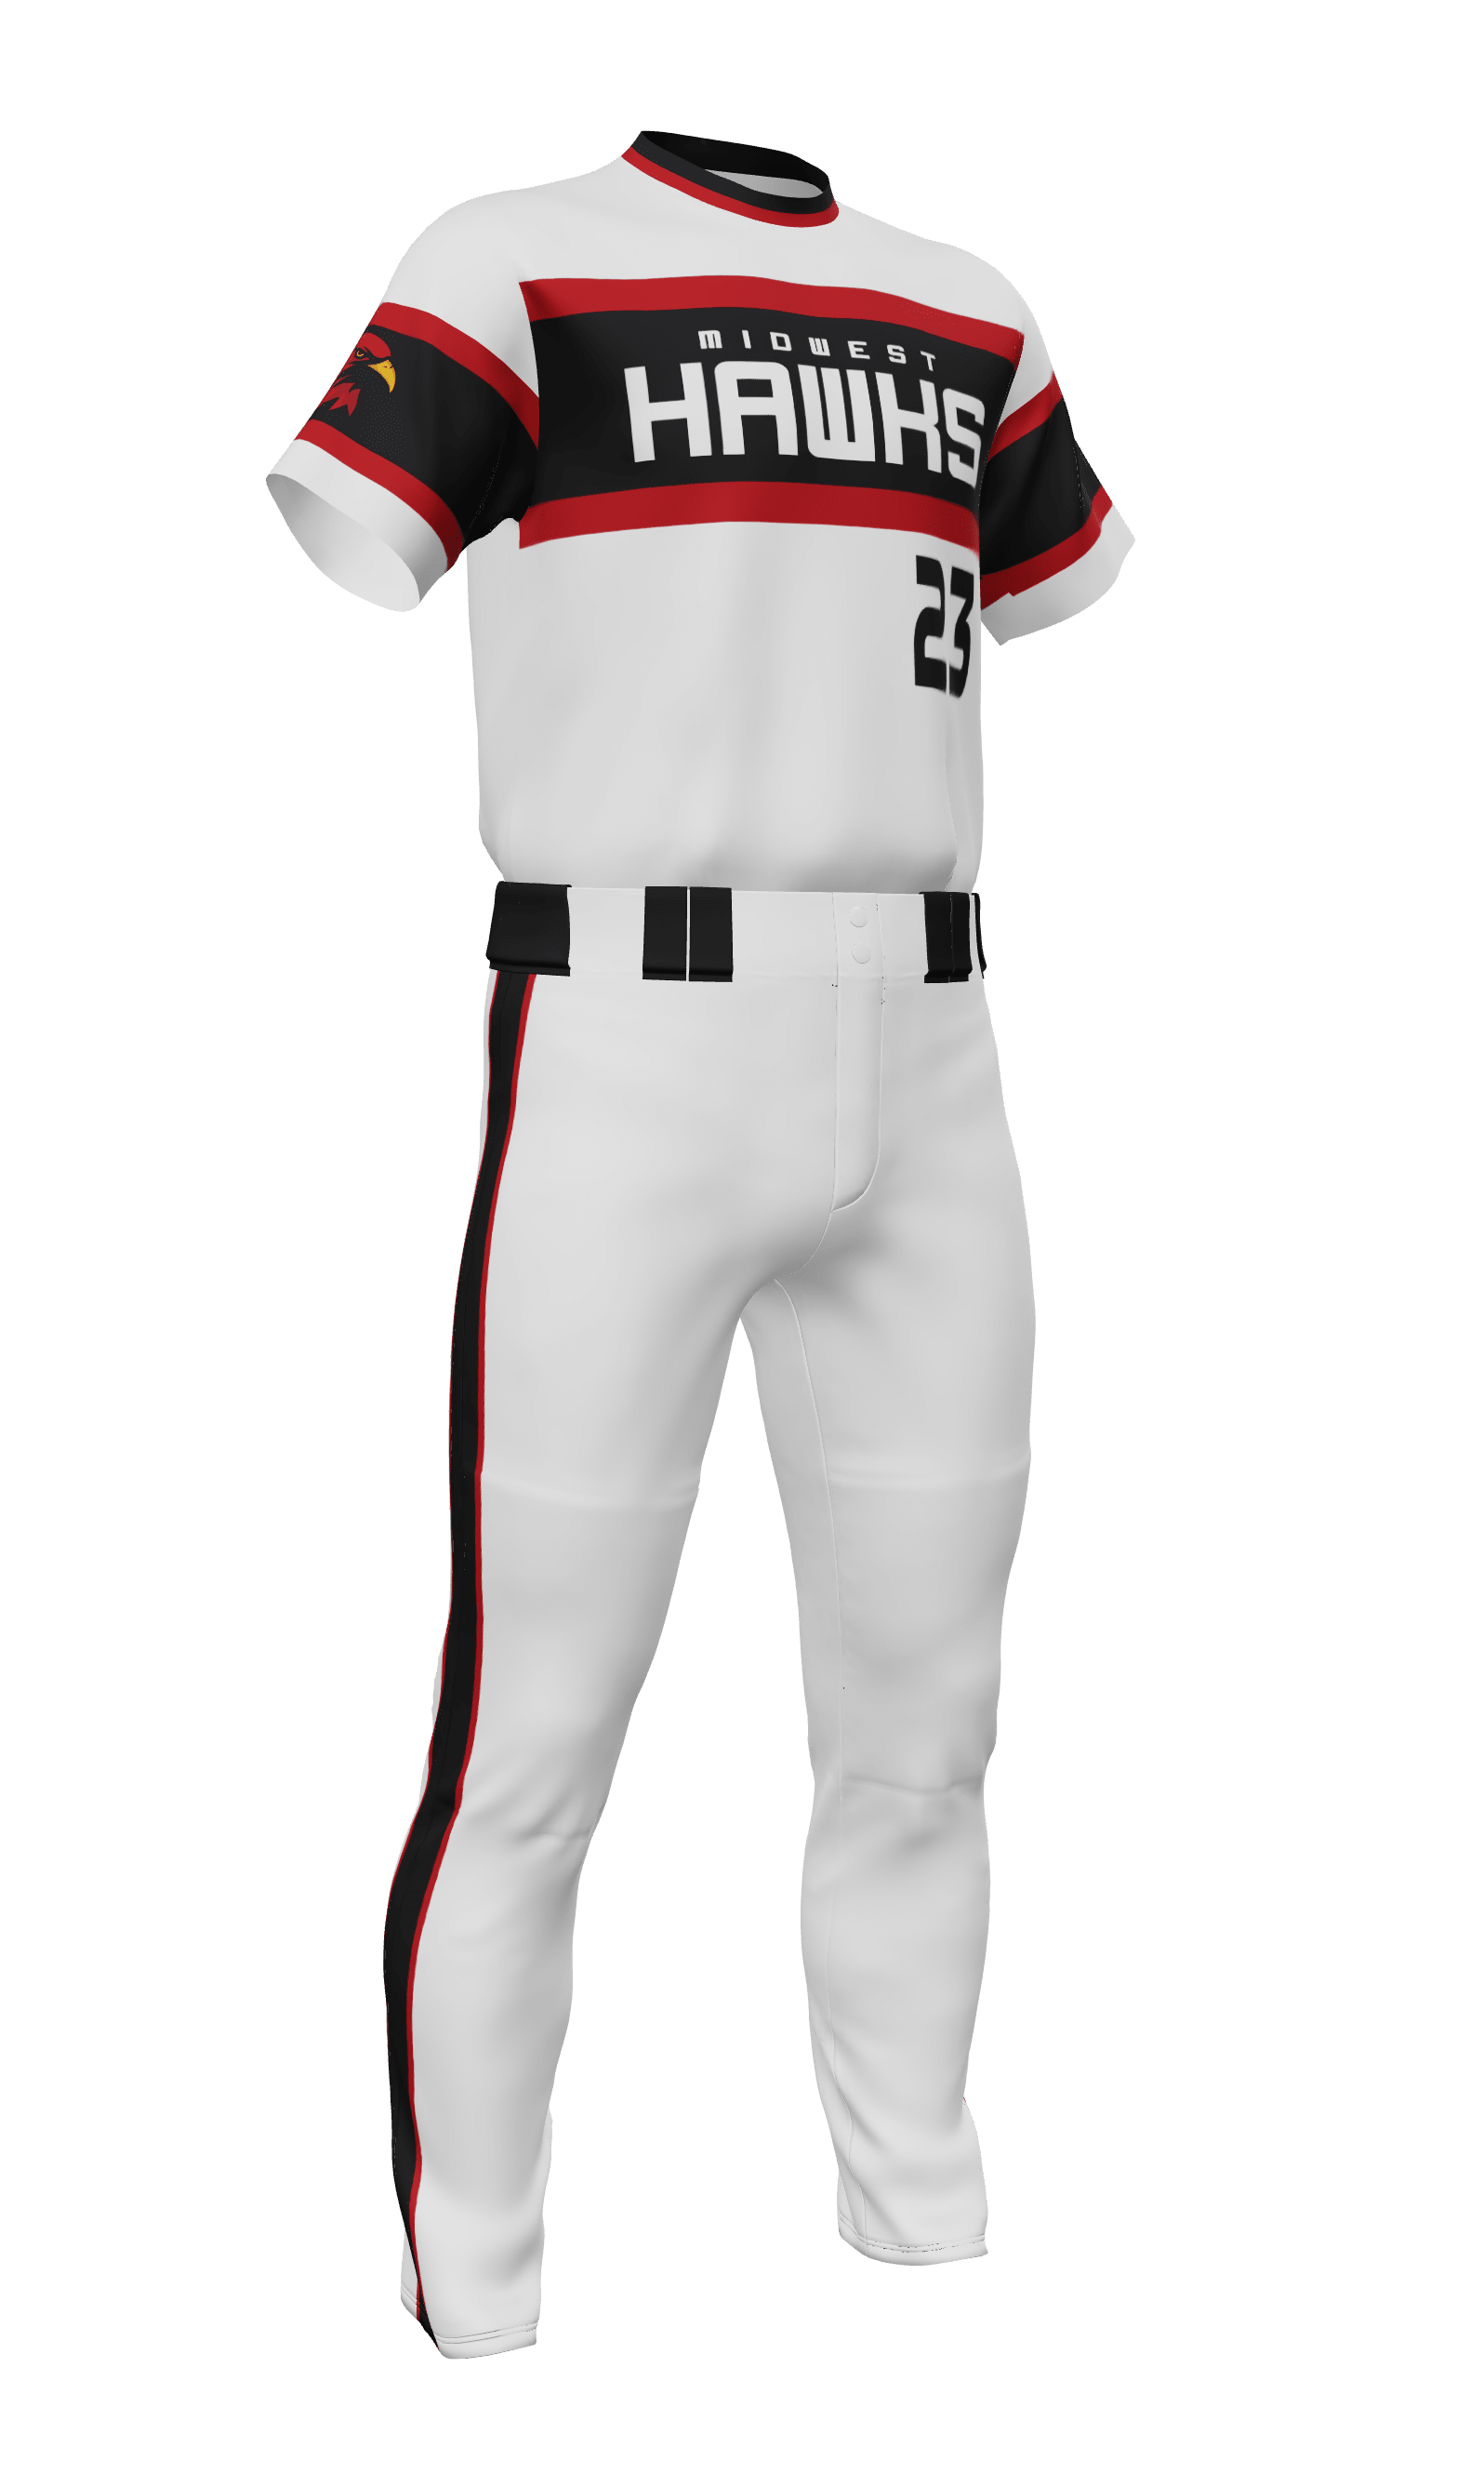 white sox concept uniforms